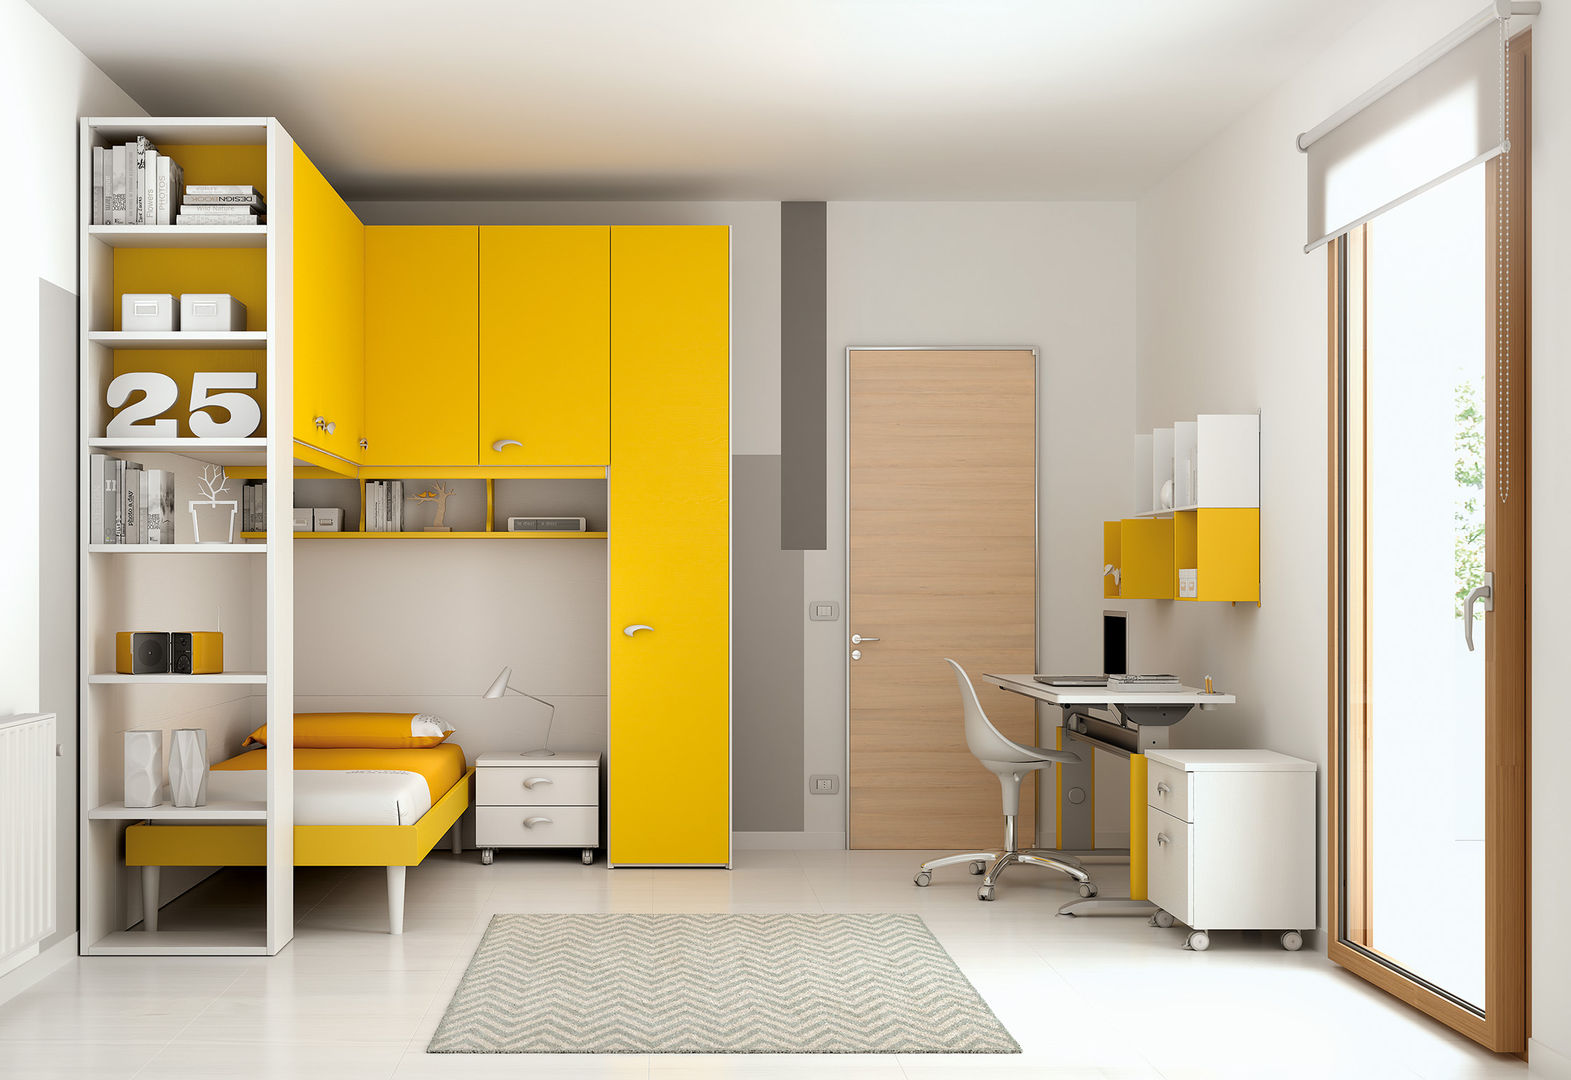 Soluzione ponte KP101, Moretti Compact Moretti Compact Dormitorios modernos: Ideas, imágenes y decoración Placares y cómodas